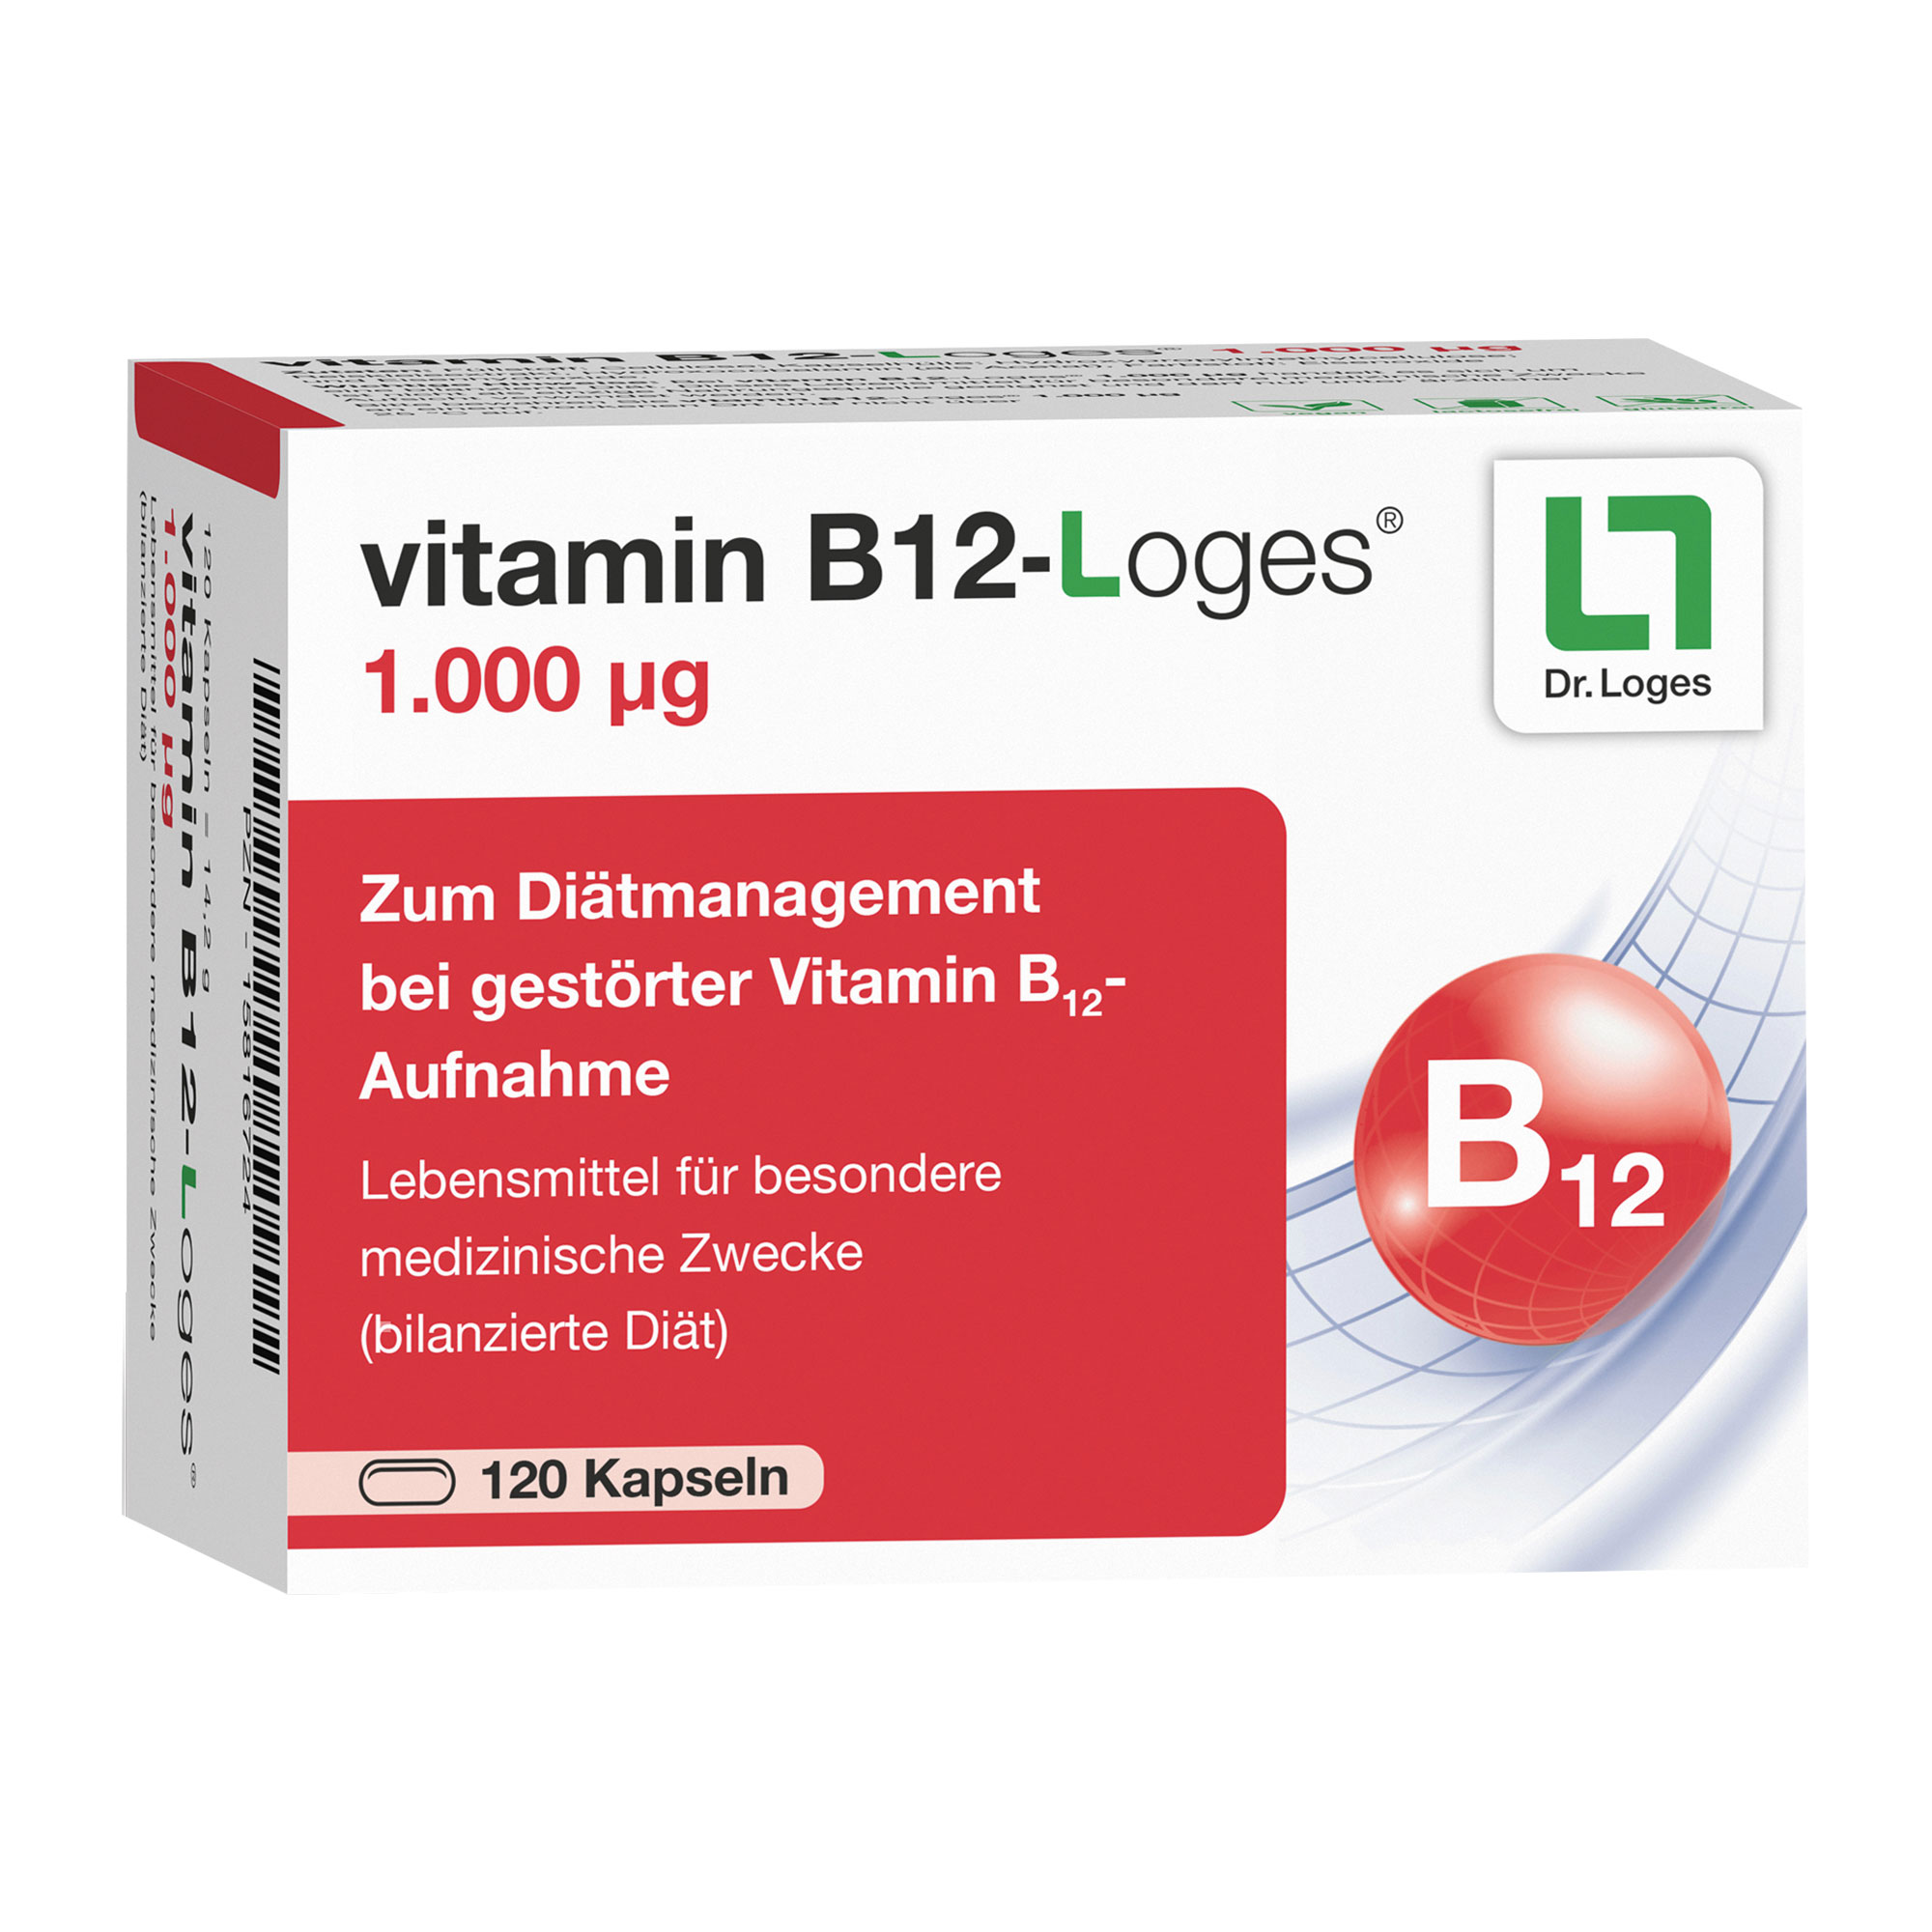 Zum Diätmanagement bei gestörter Vitamin B12-Aufnahme.